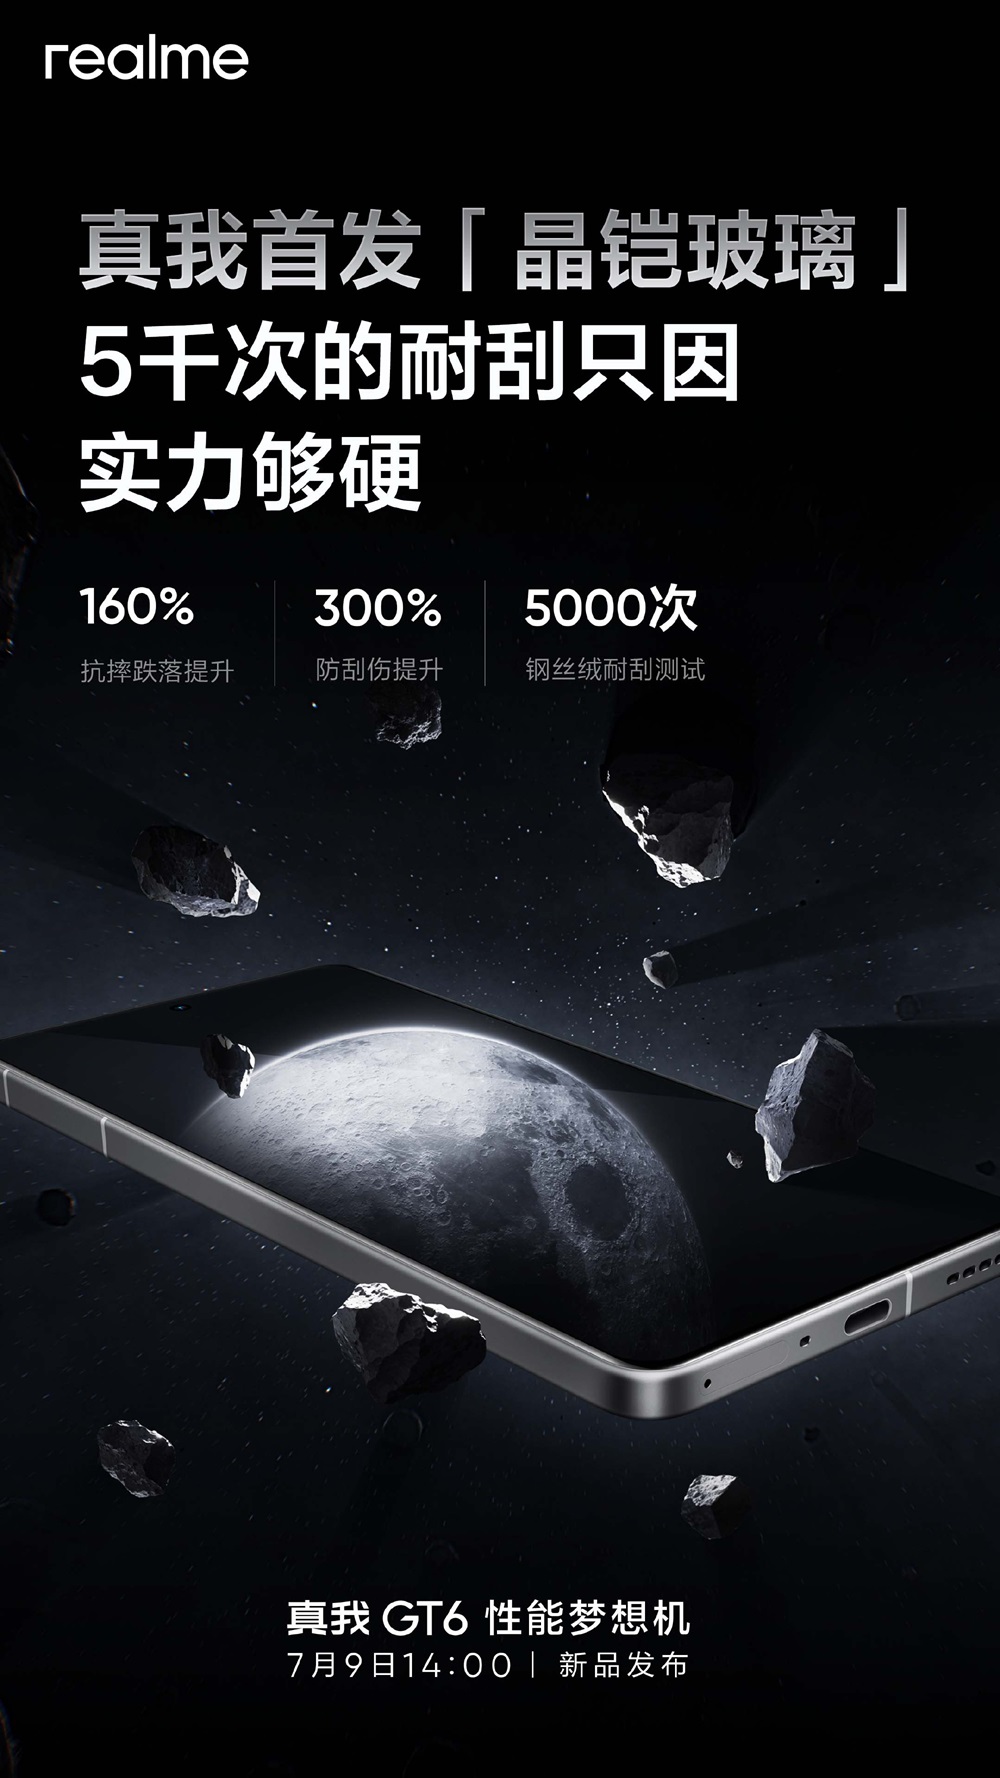 китайская версия Realme GT6